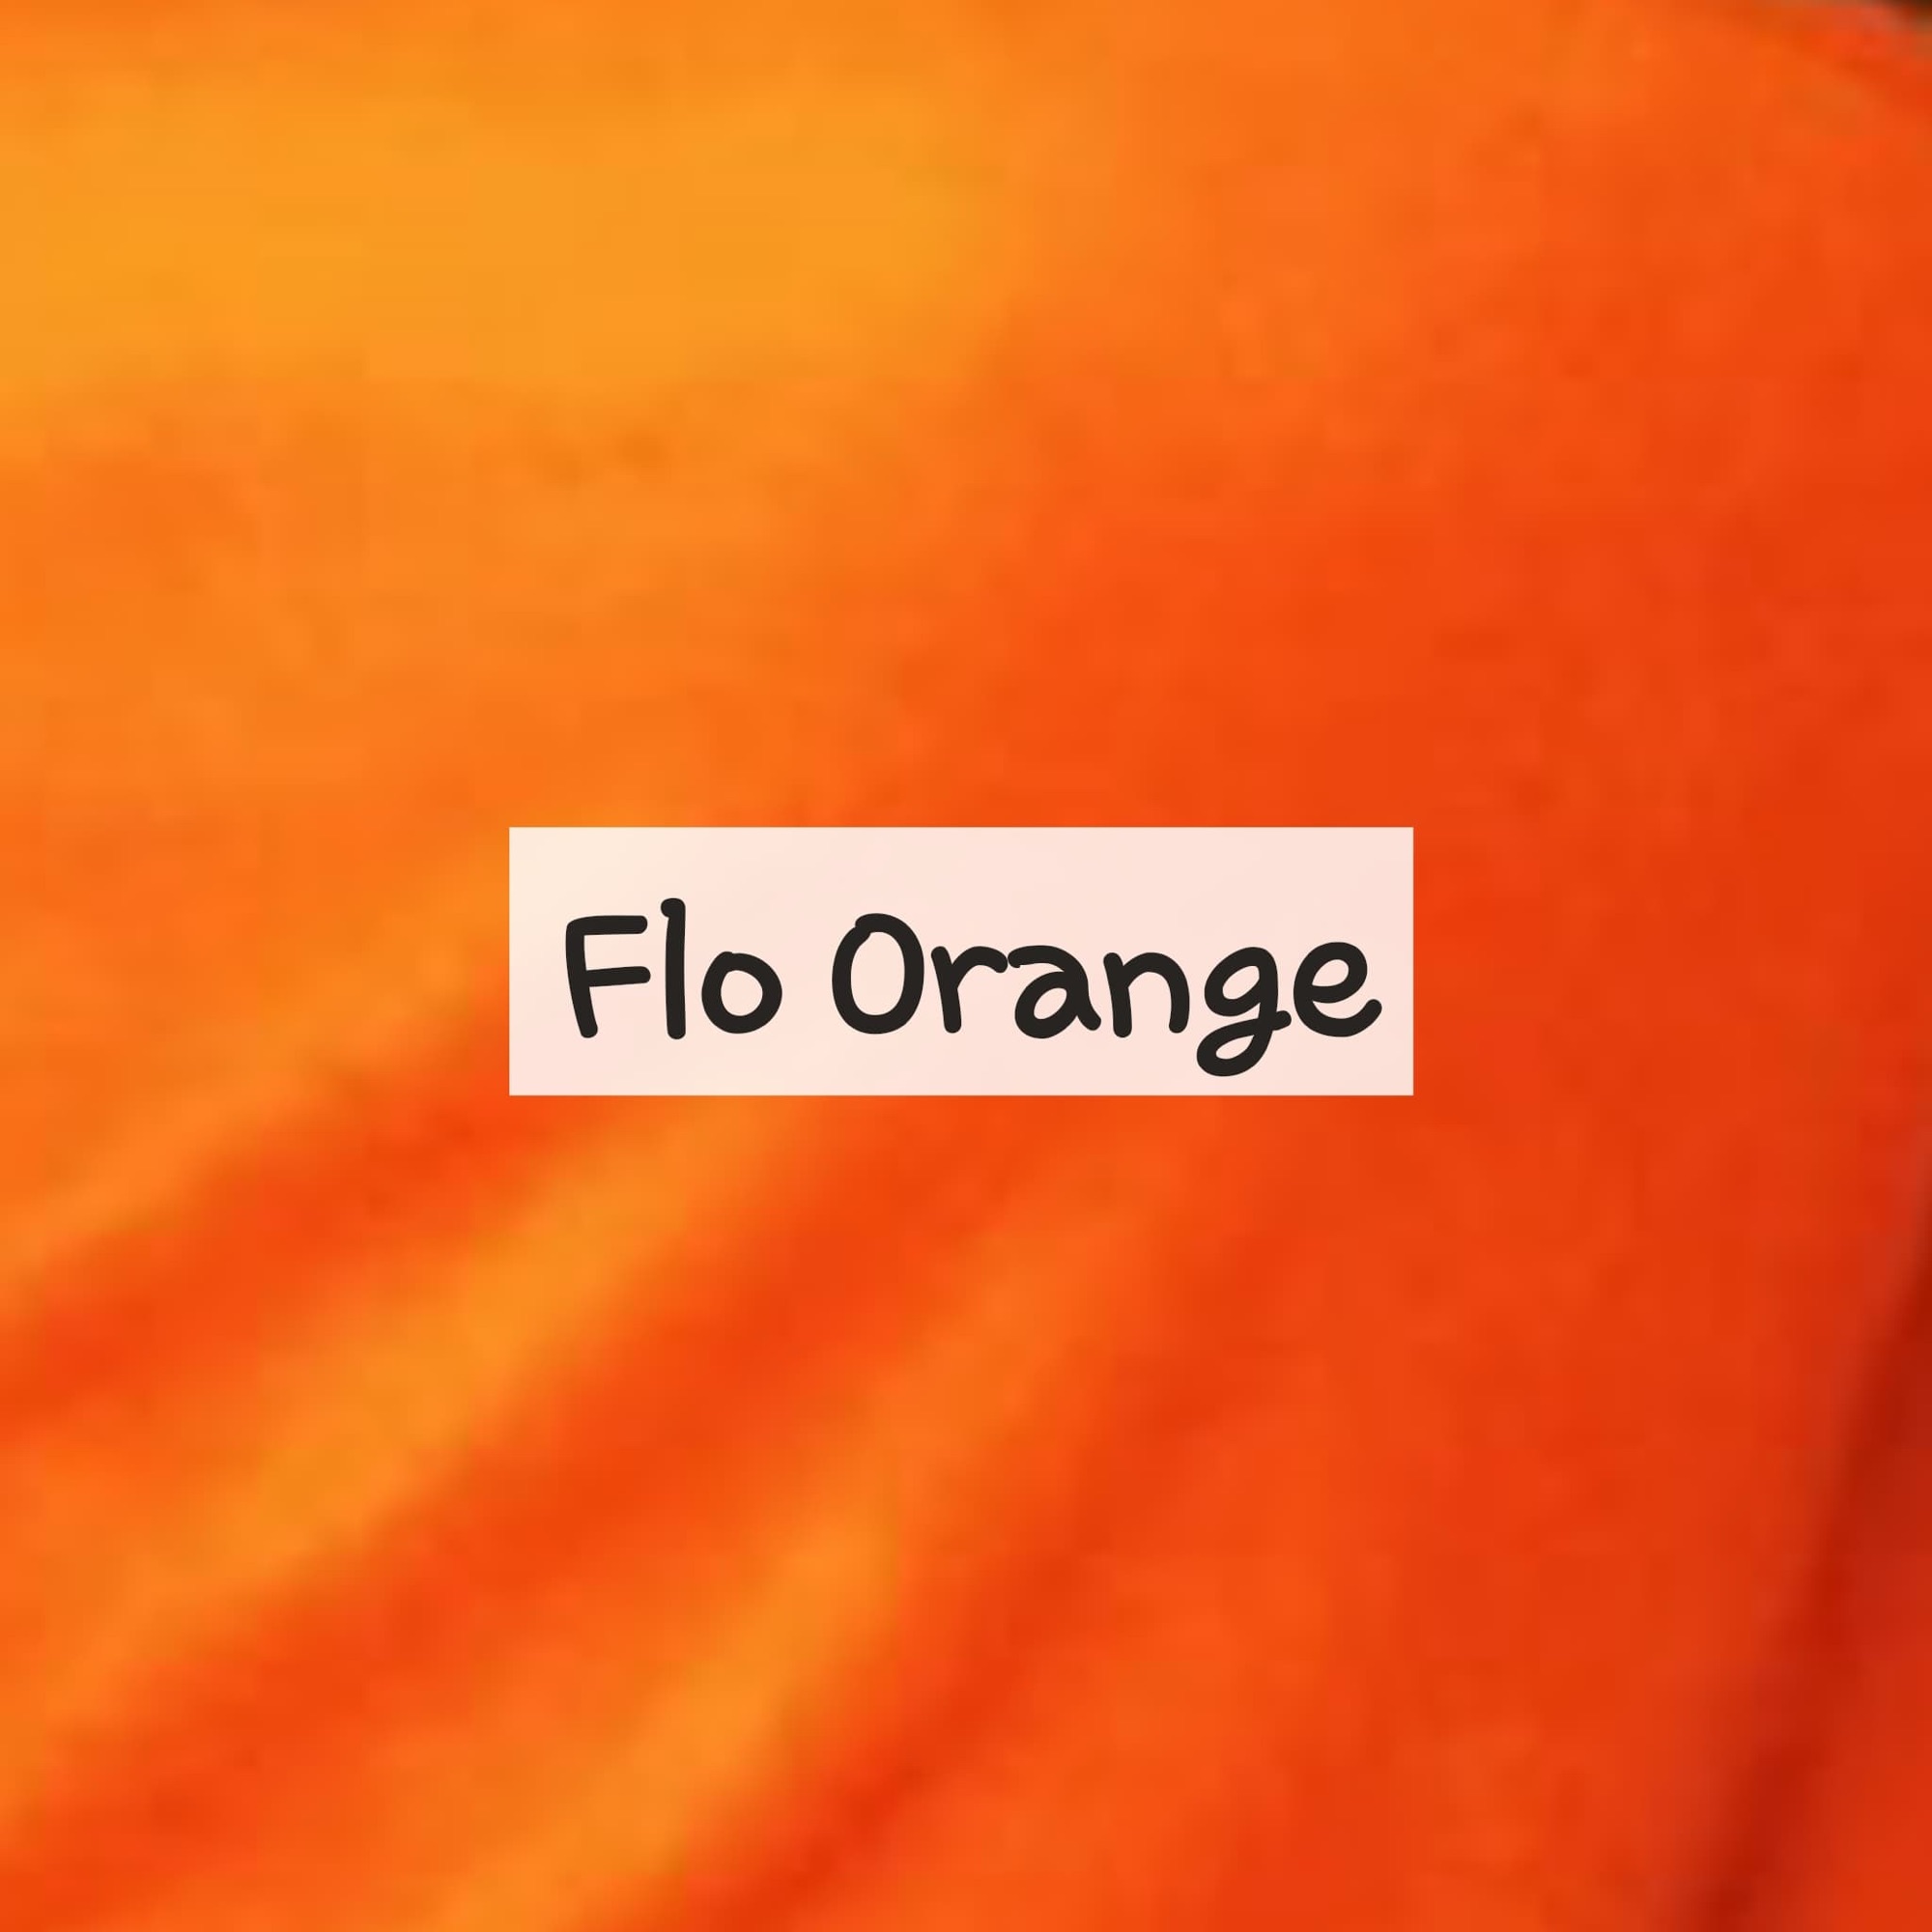 Flo Orange Fleece